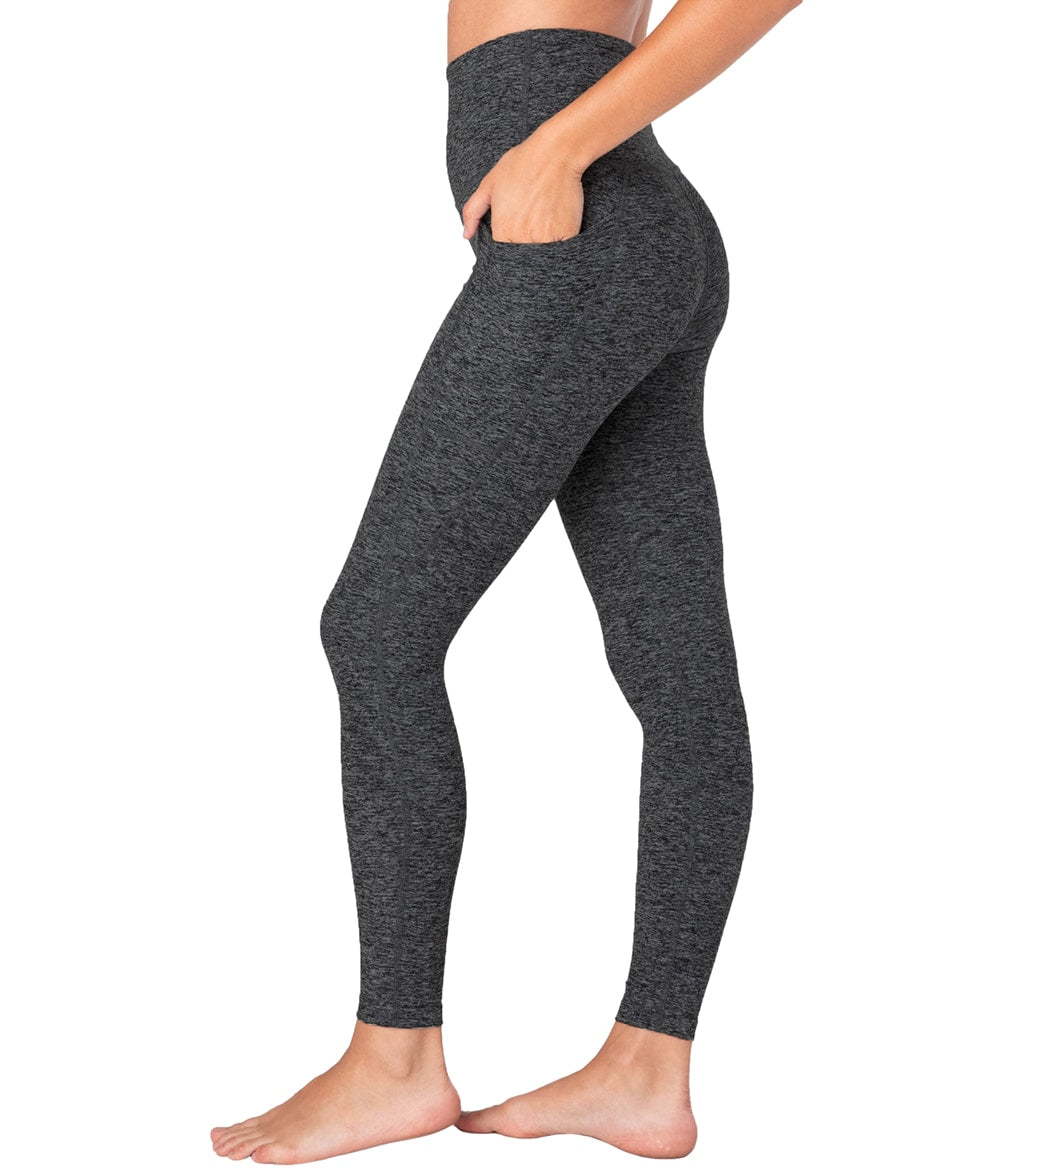 Beyond Yoga Women's Size XL Purple Spacedye High Waisted Leggings W/Pockets